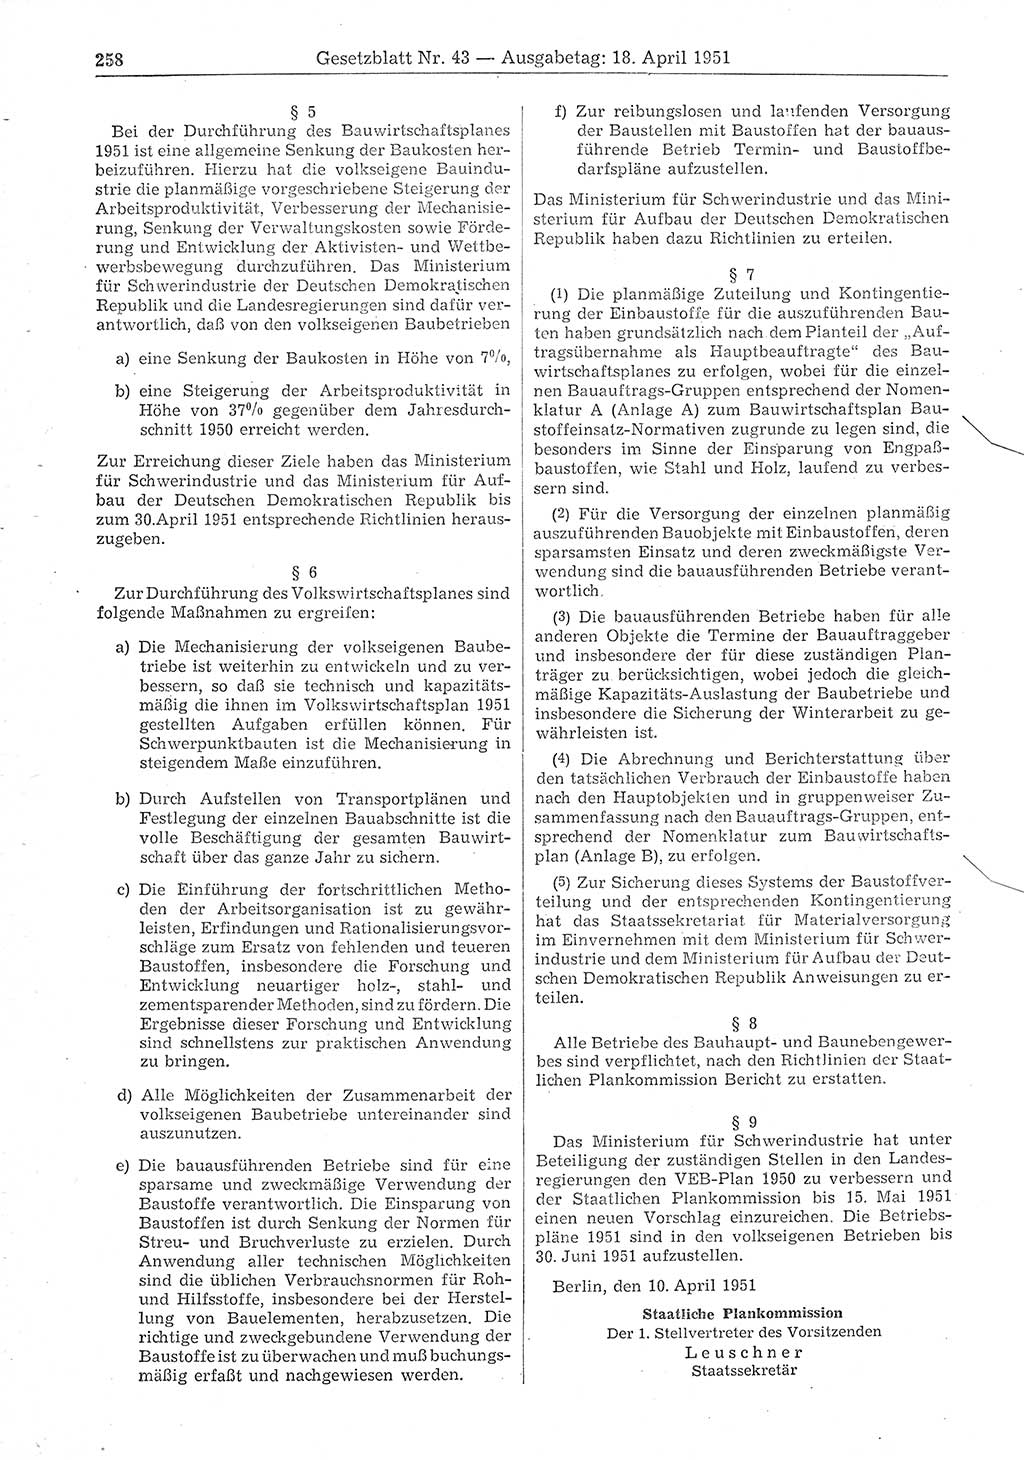 Gesetzblatt (GBl.) der Deutschen Demokratischen Republik (DDR) 1951, Seite 258 (GBl. DDR 1951, S. 258)